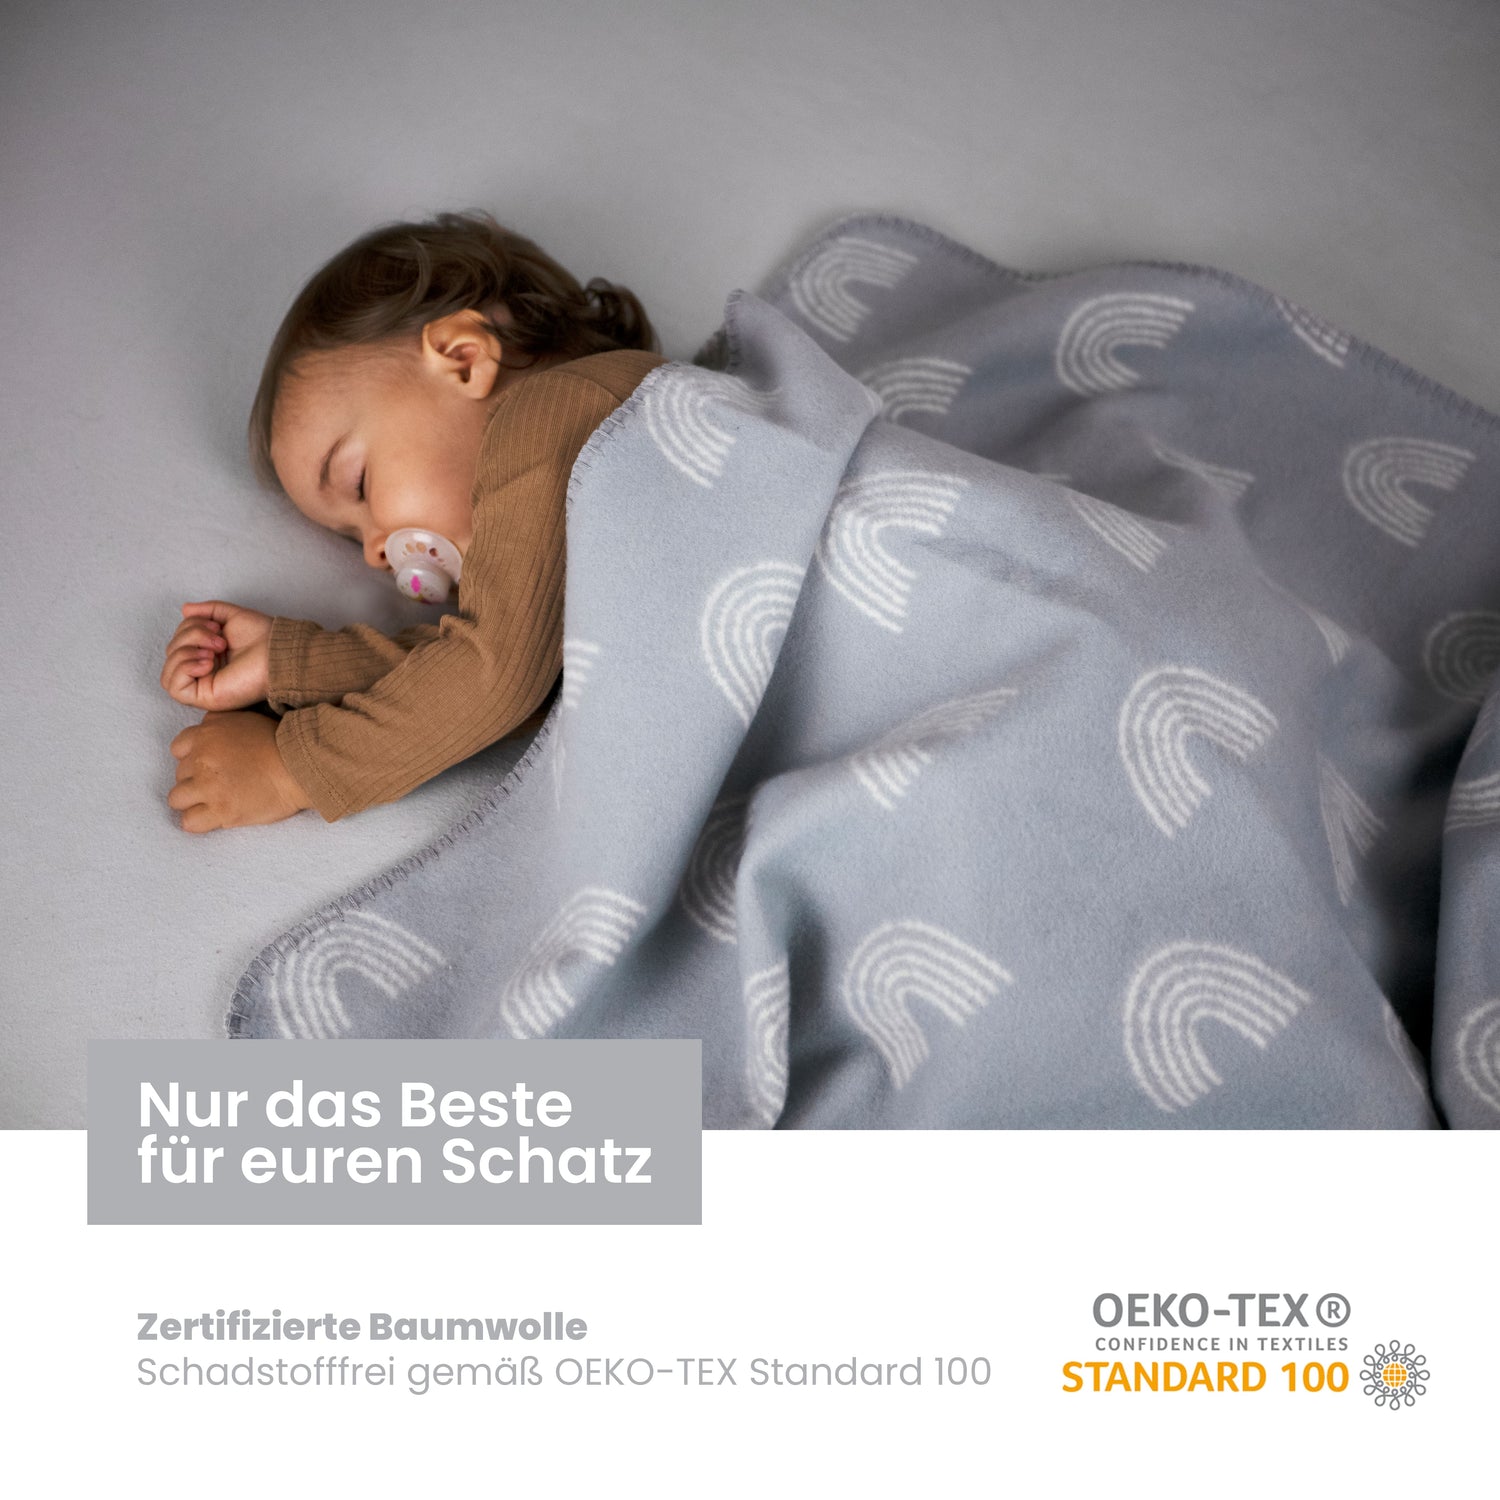 Couverture pour bébé en coton biologique, Made in Germany, arc-en-ciel - gris